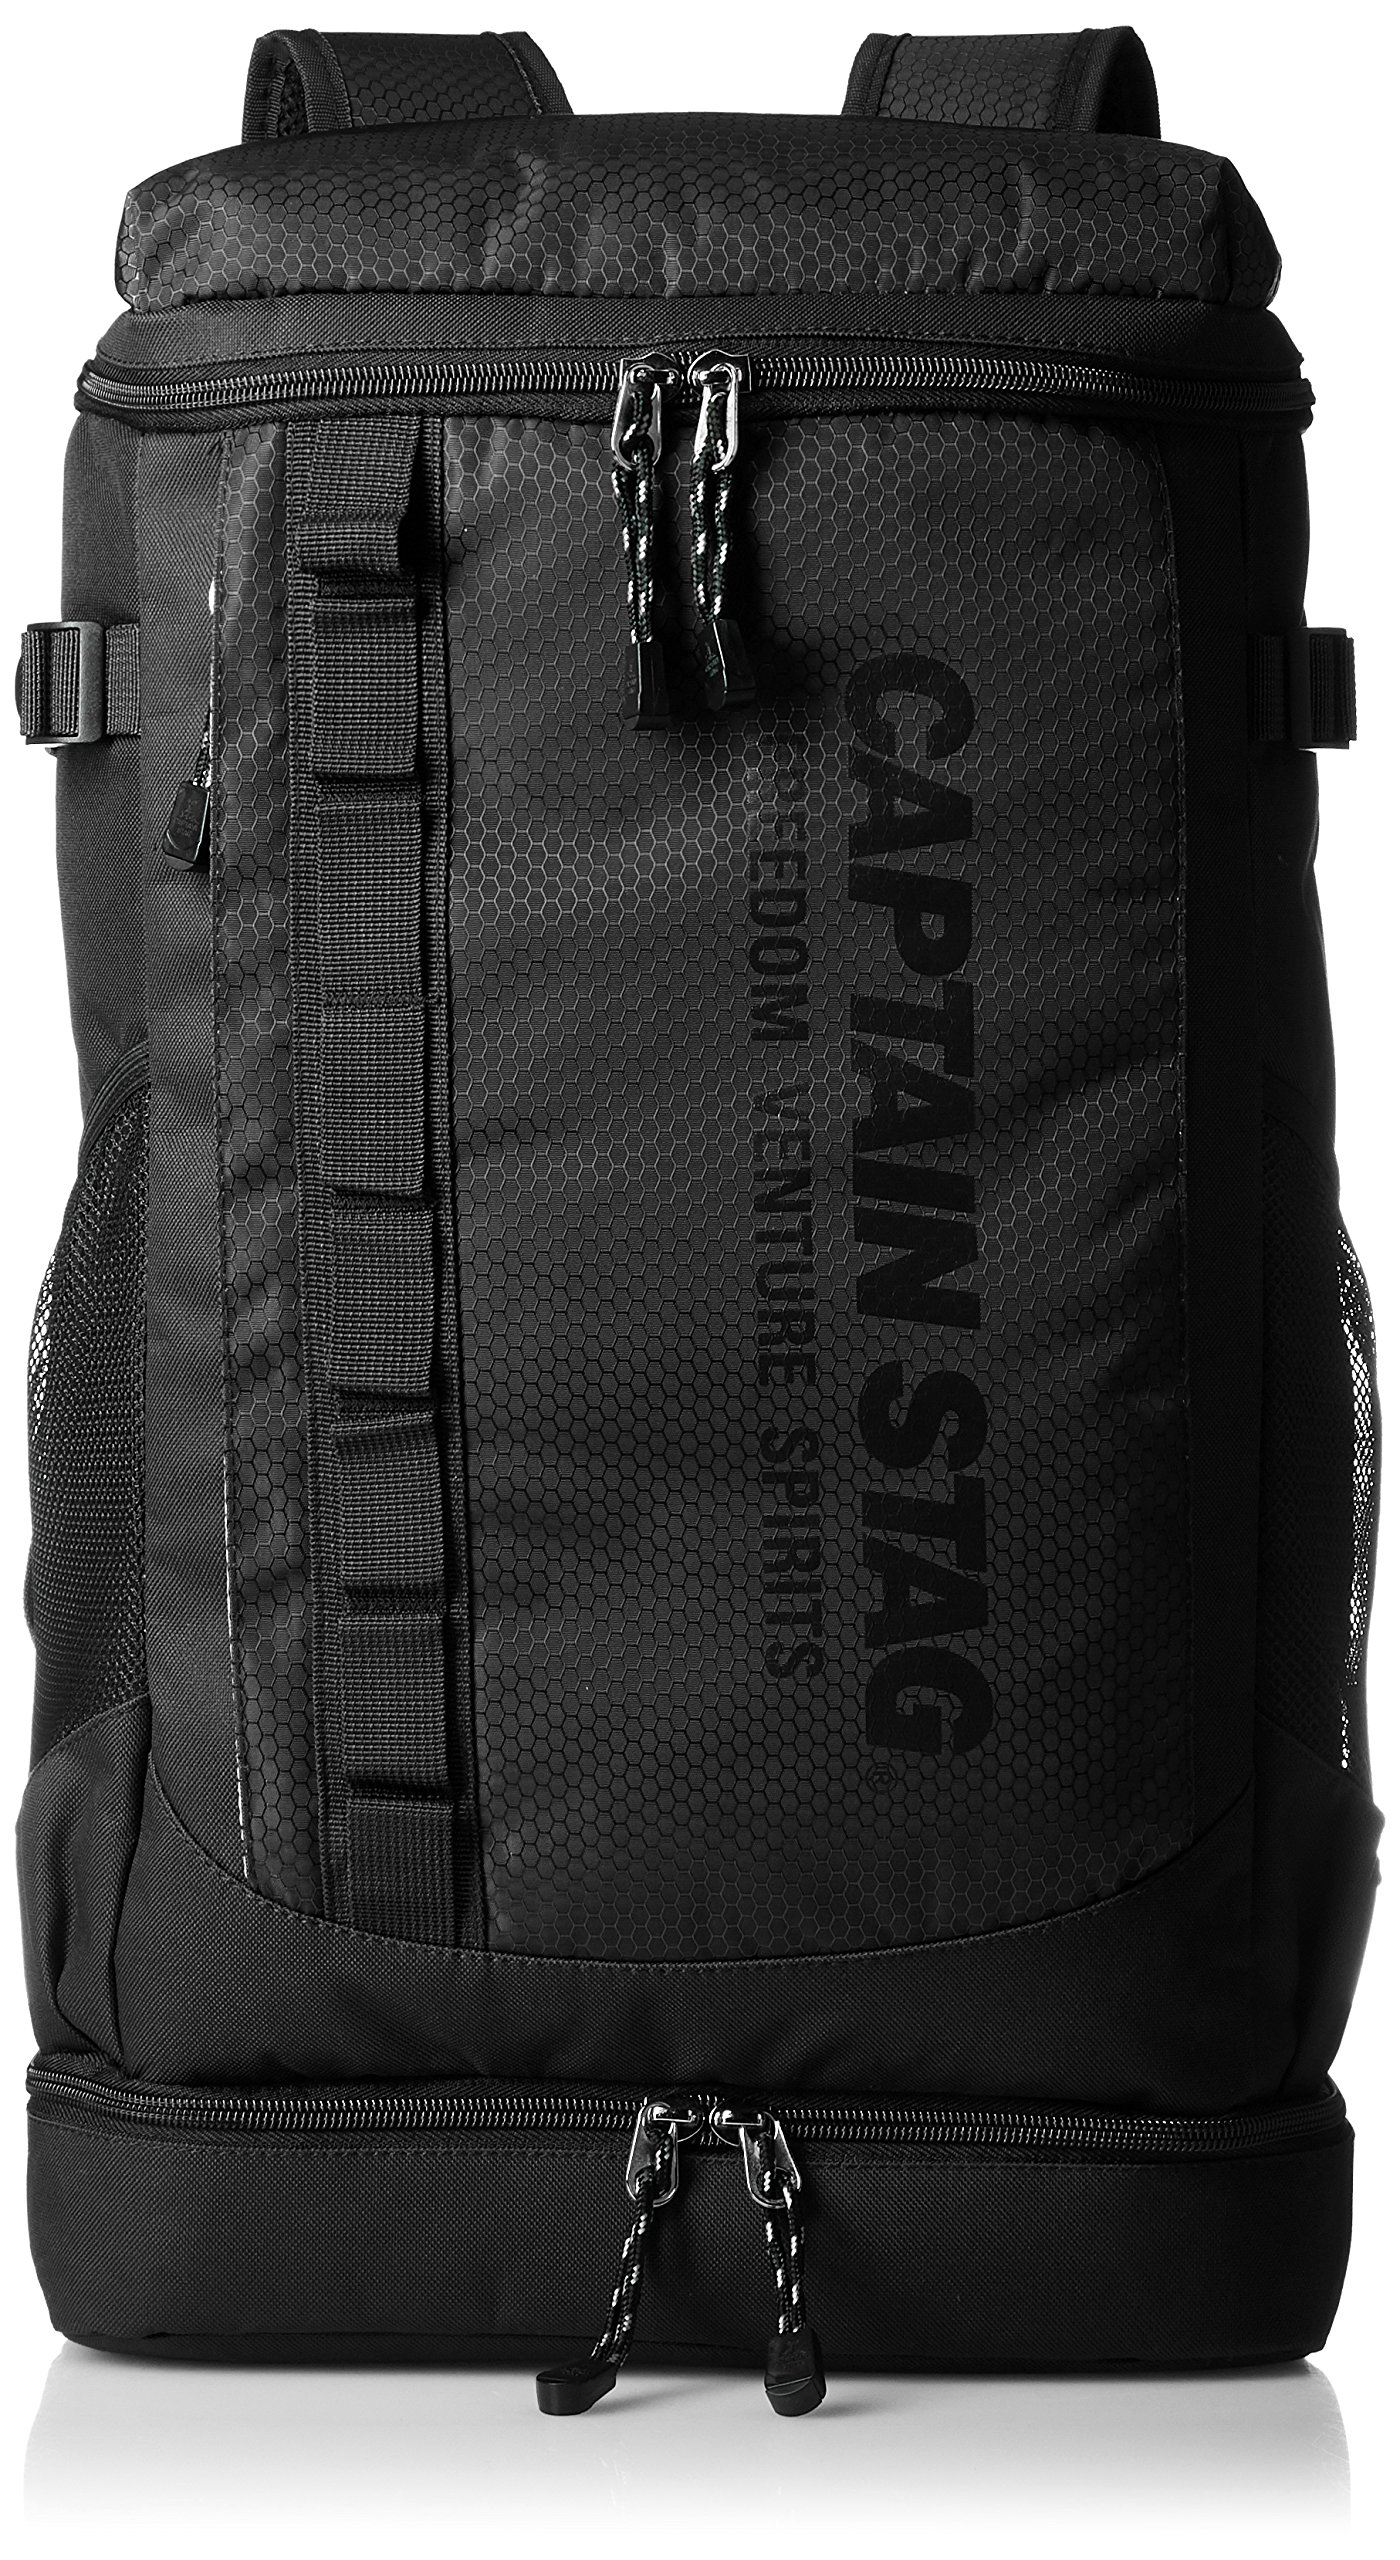 キャプテンスタッグ(CAPTAIN STAG) Men's Backpack, Black (Black 19-3911tcx)